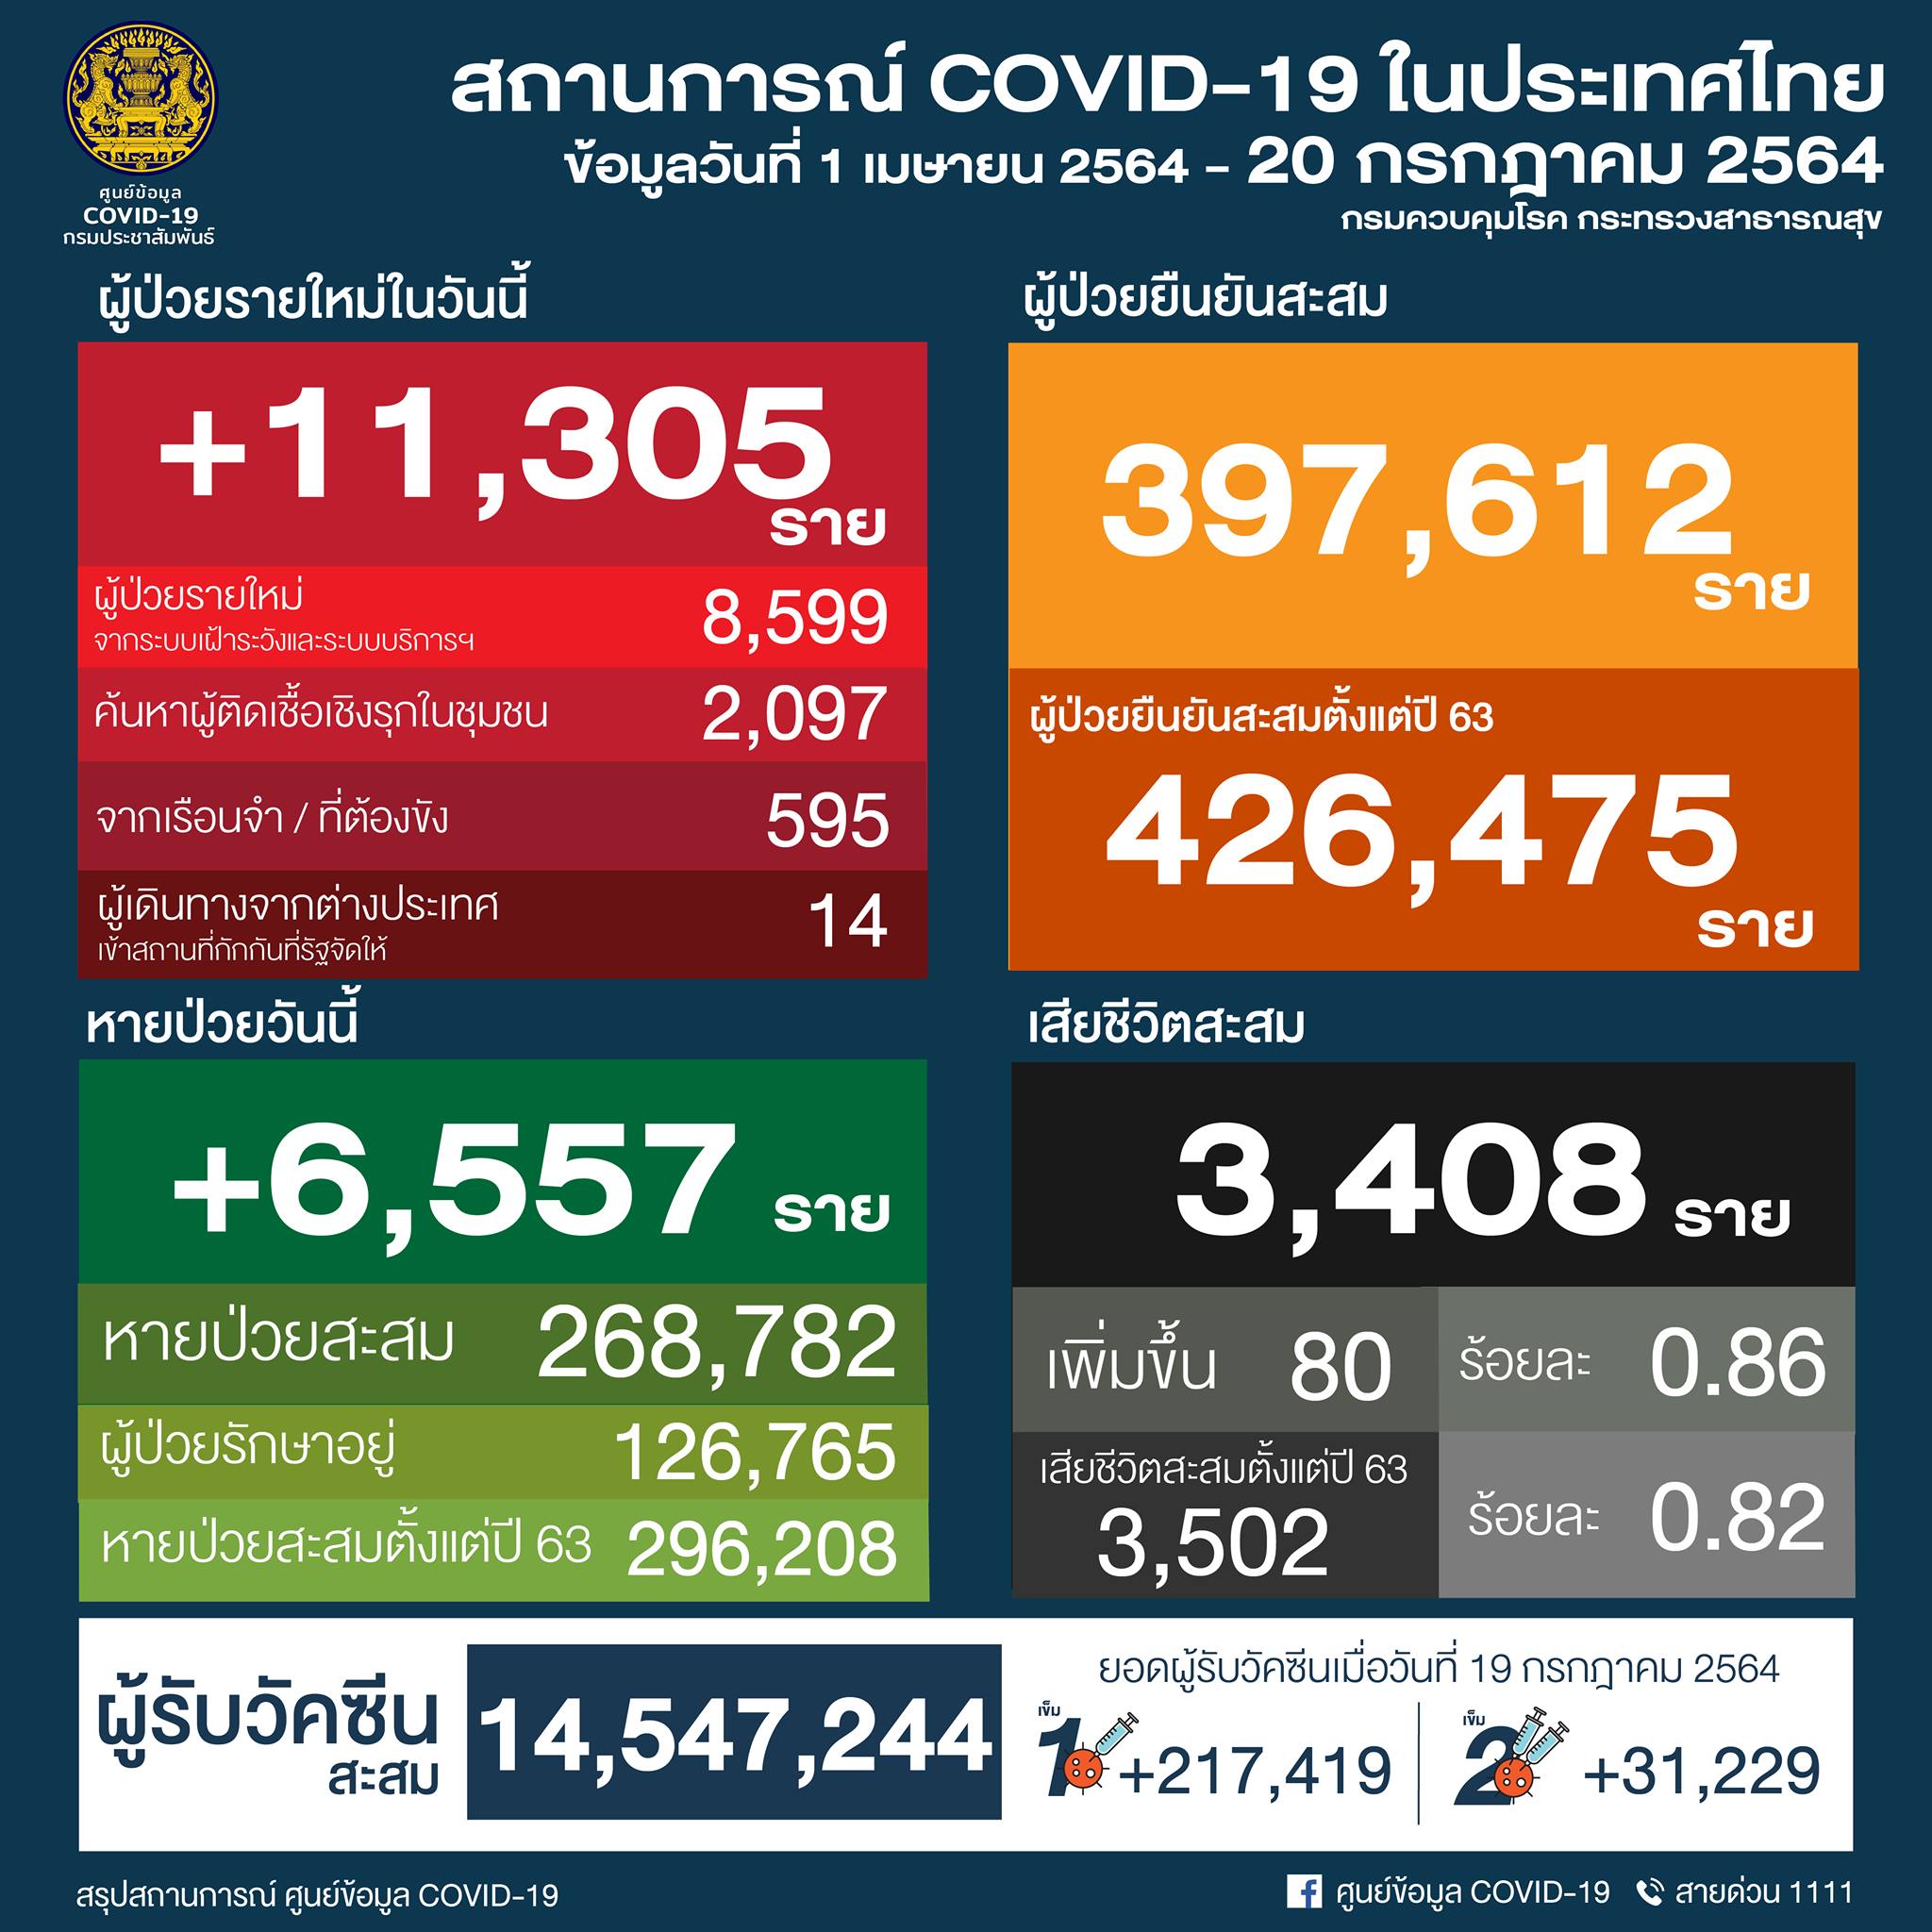 タイ過去最多の11,305人陽性／バンコク2,764人／プーケット7人／チェンマイ46人 ［2021年7月20日発表］